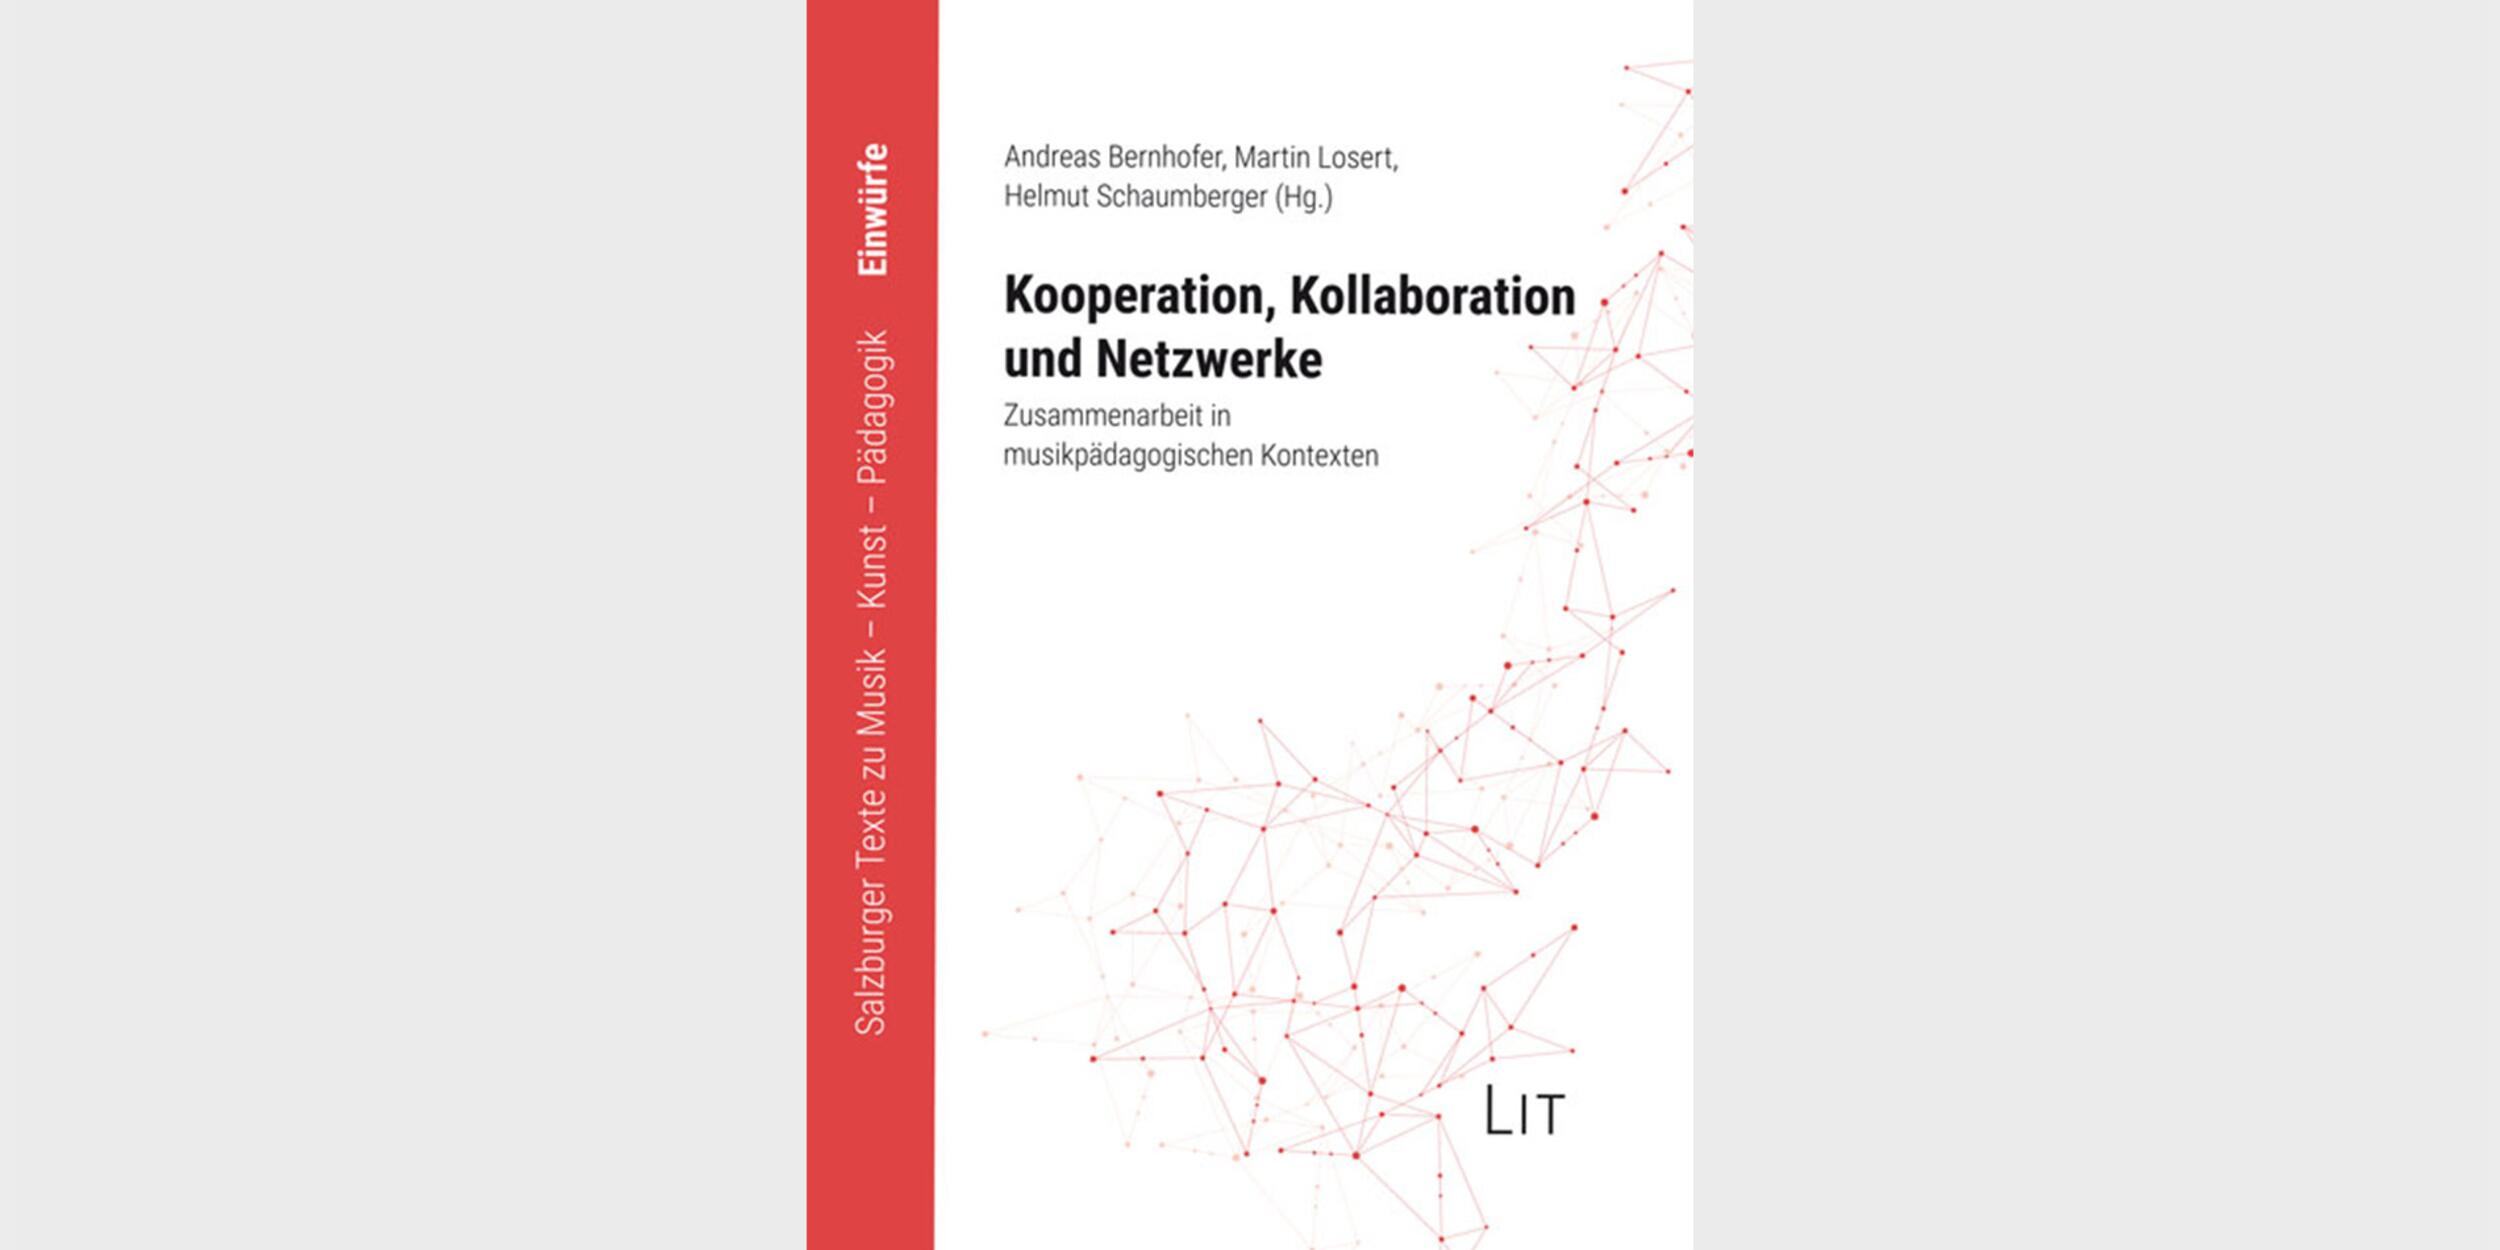 Kooperation, Kollaboration und Netzwerken